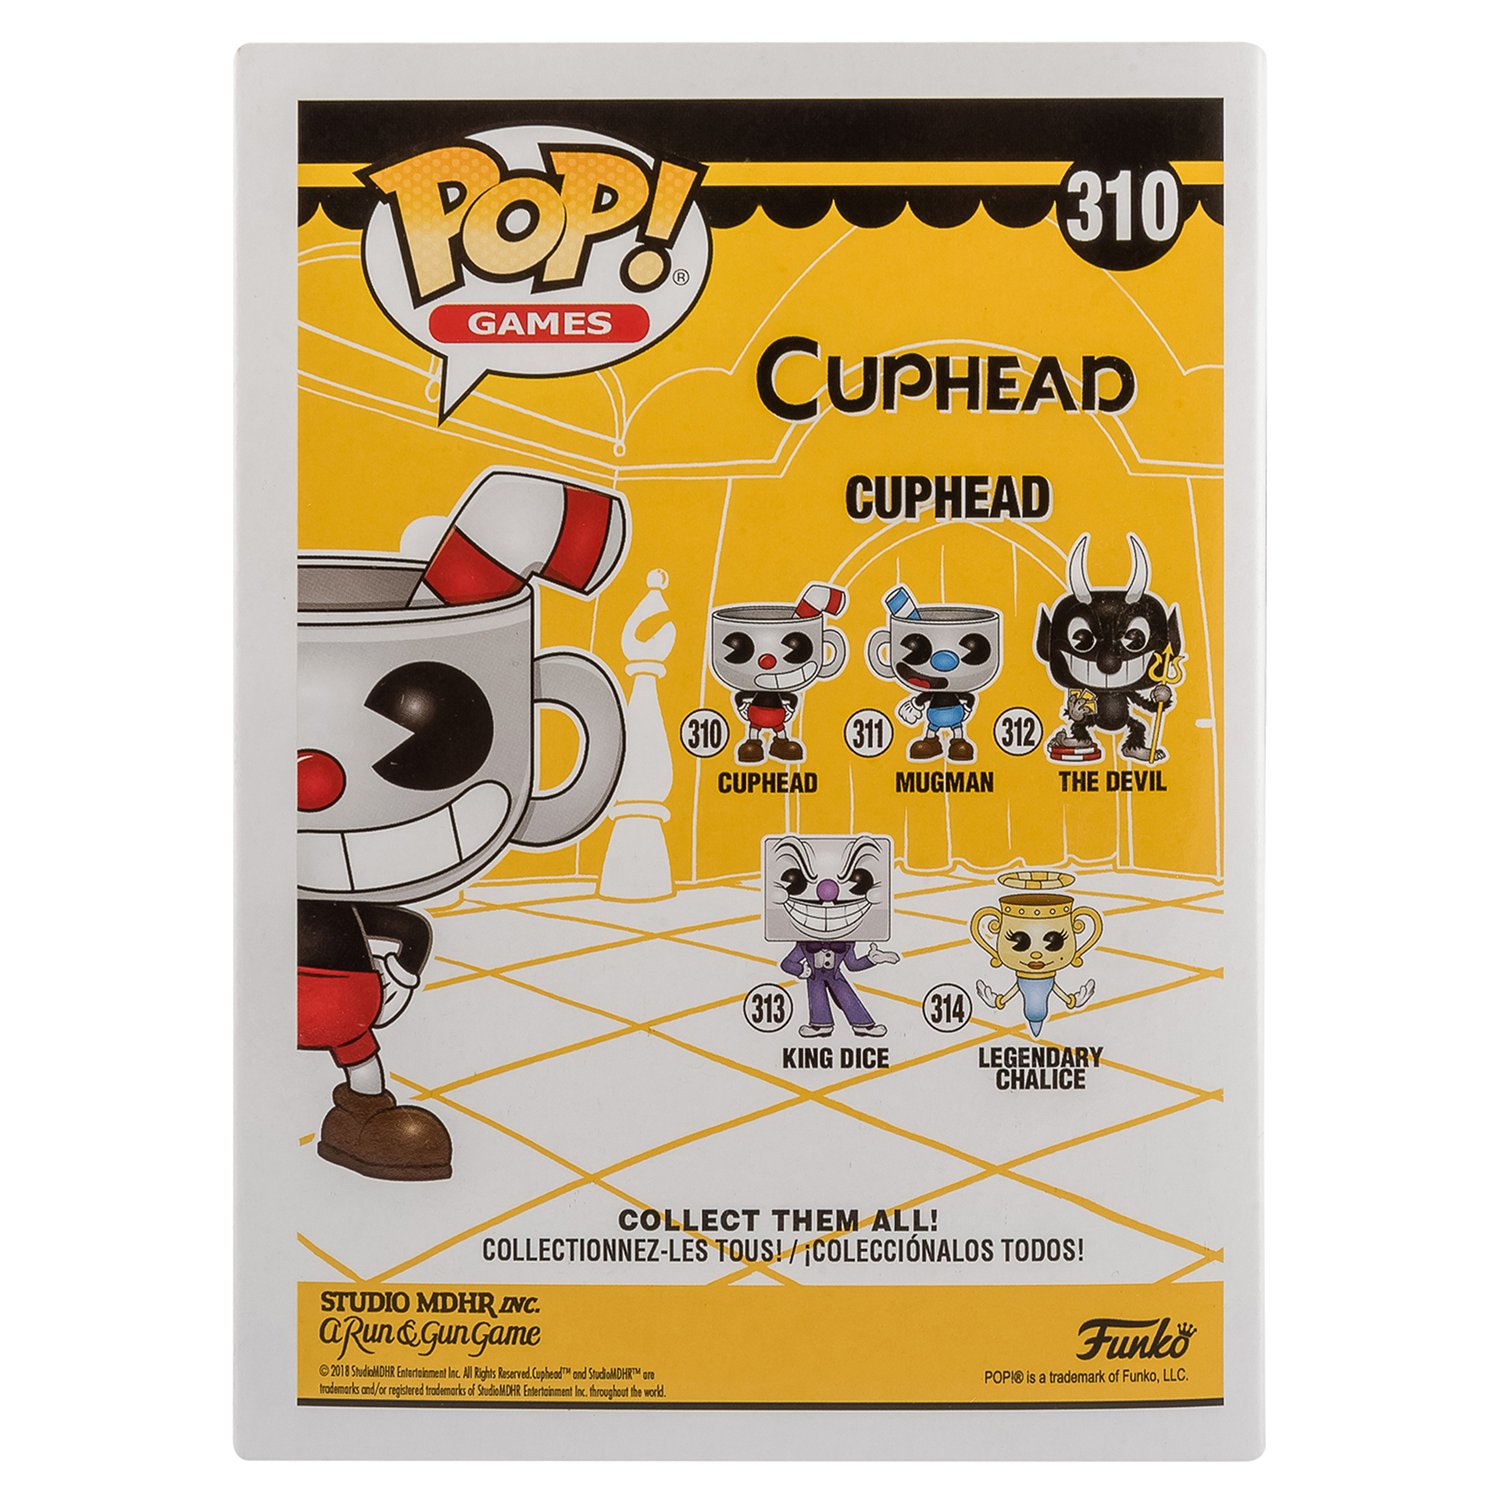 Фигурка Funko Pop vinyl Games Cuphead Cuphead